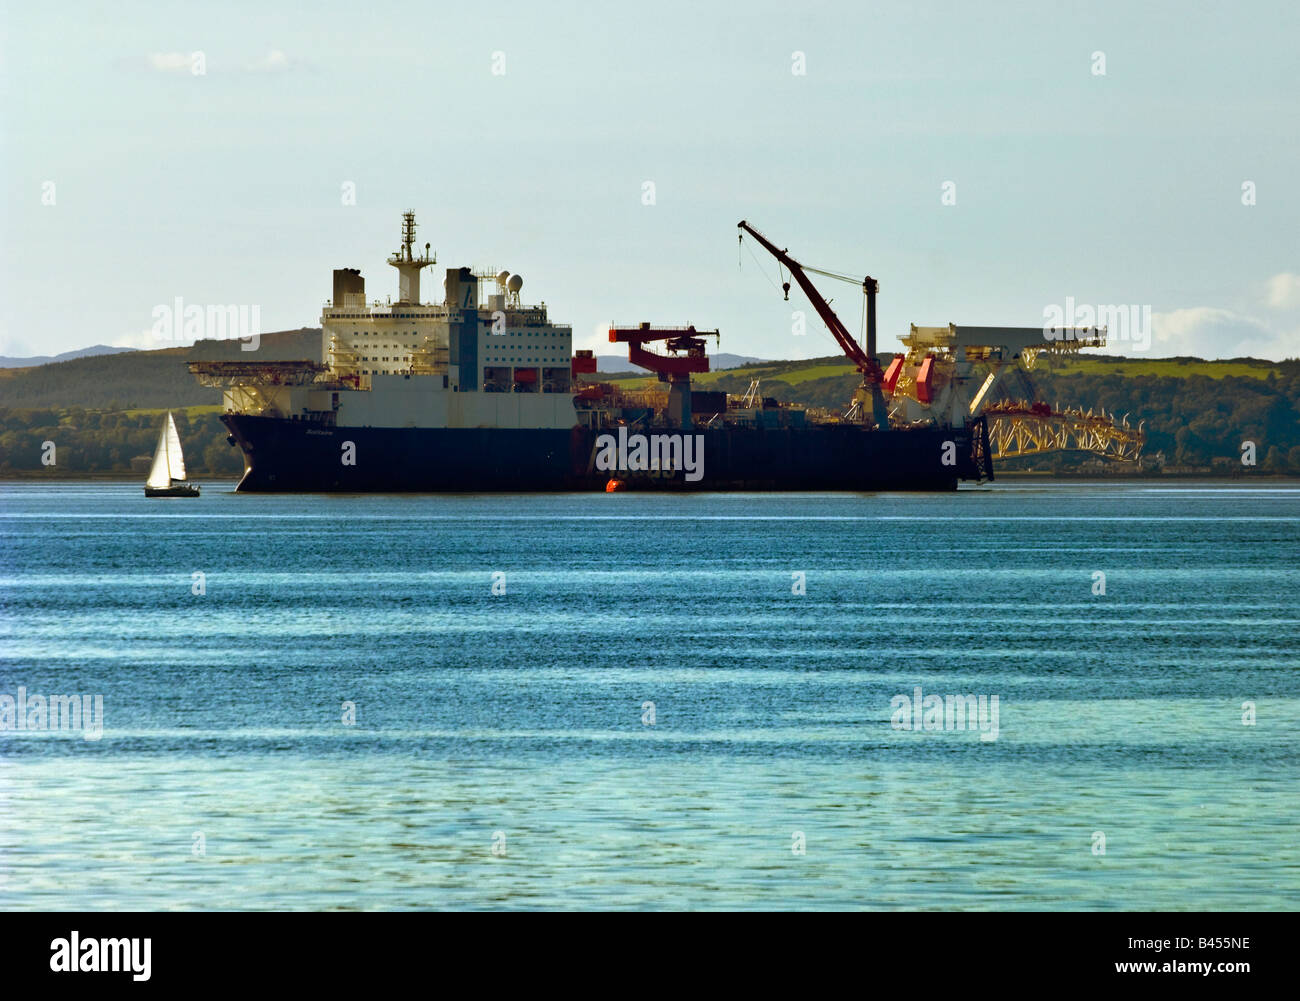 Solitär Rohrverlegung Schiff von Schweizer Firma Allseas betrieben. Der größte seiner Art in der Welt legt es Öl und Gas Pipelines. Stockfoto